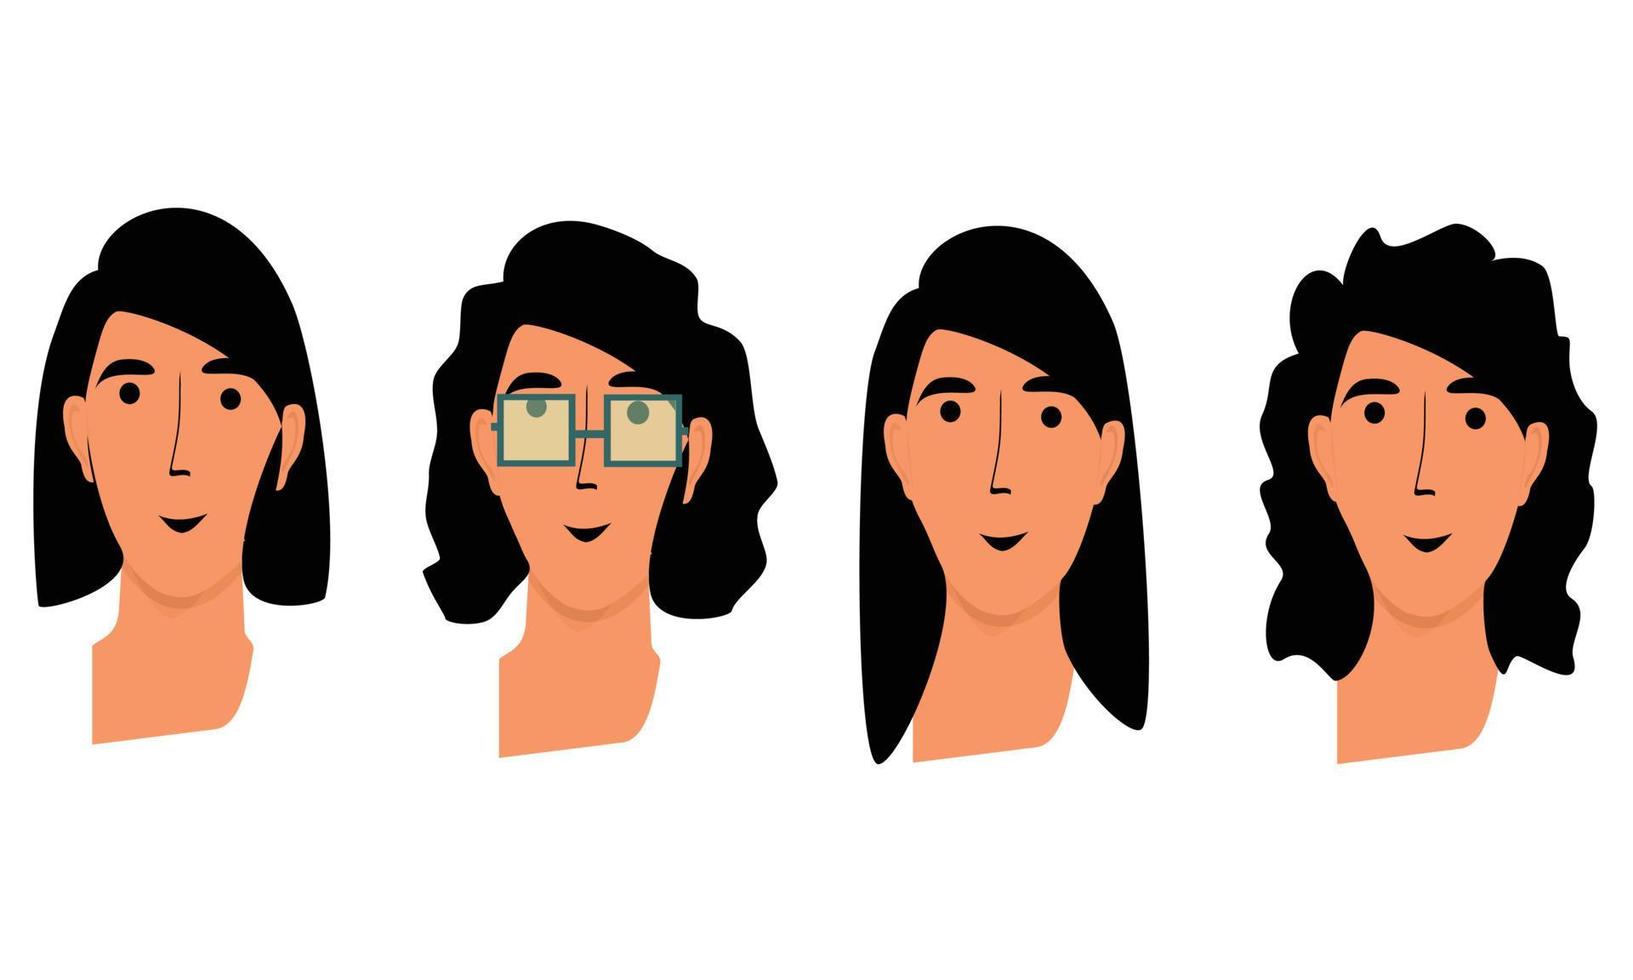 ilustración de la cara de una mujer, con 4 personajes diferentes, para un modelo, diseño plano, icono, estilo vectorial vector